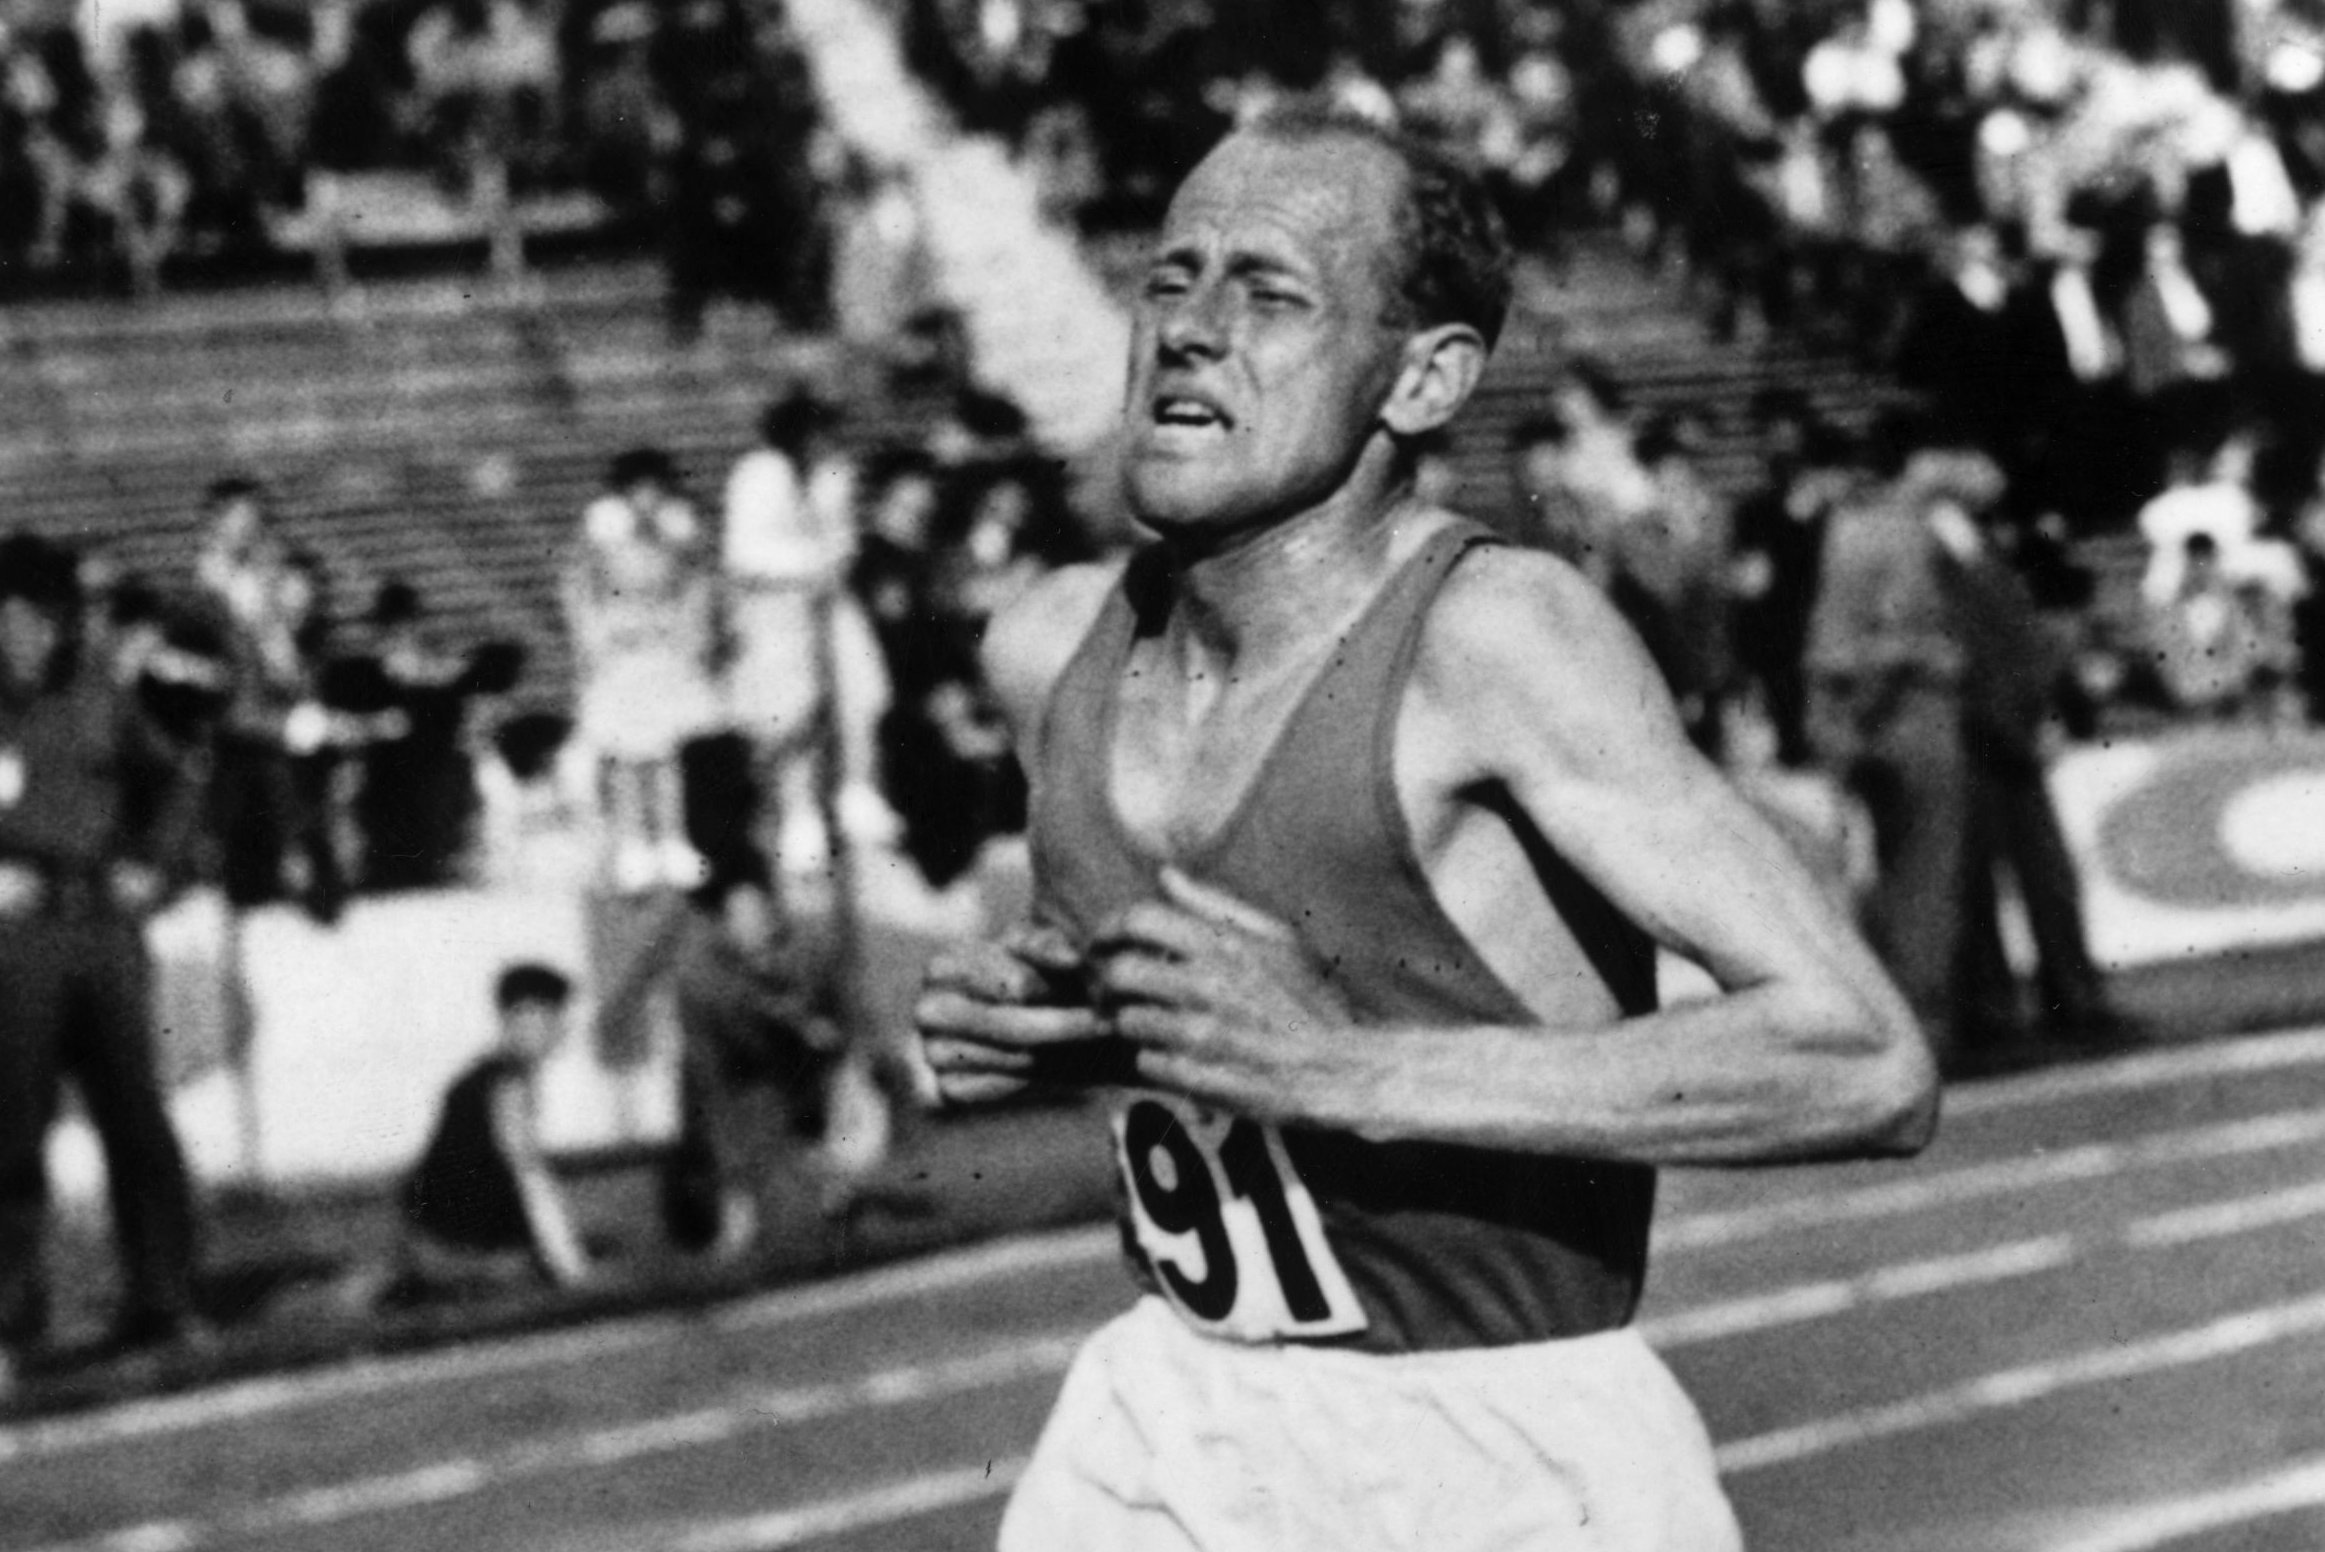 La increíble historia del corredor más famoso del mundo que el comunismo quiso sumergir en el olvido